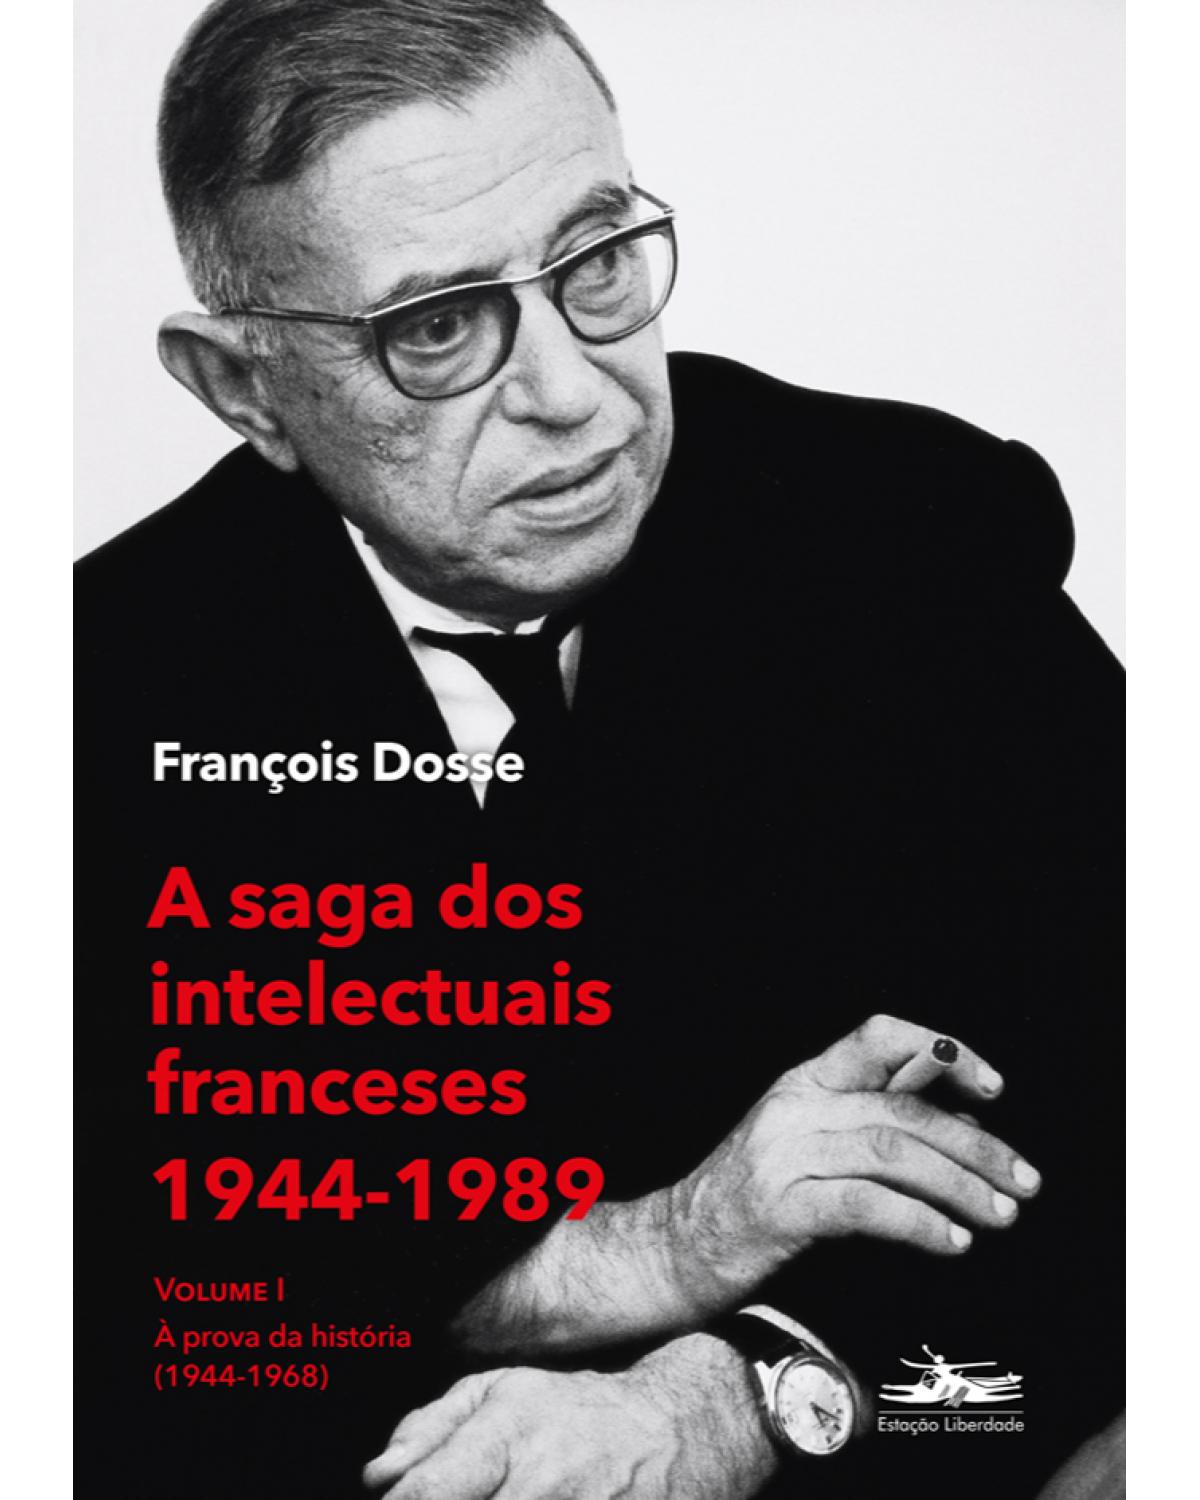 A saga dos intelectuais franceses I - Volume 1: a prova da história (1944-1968) - 1ª Edição | 2021